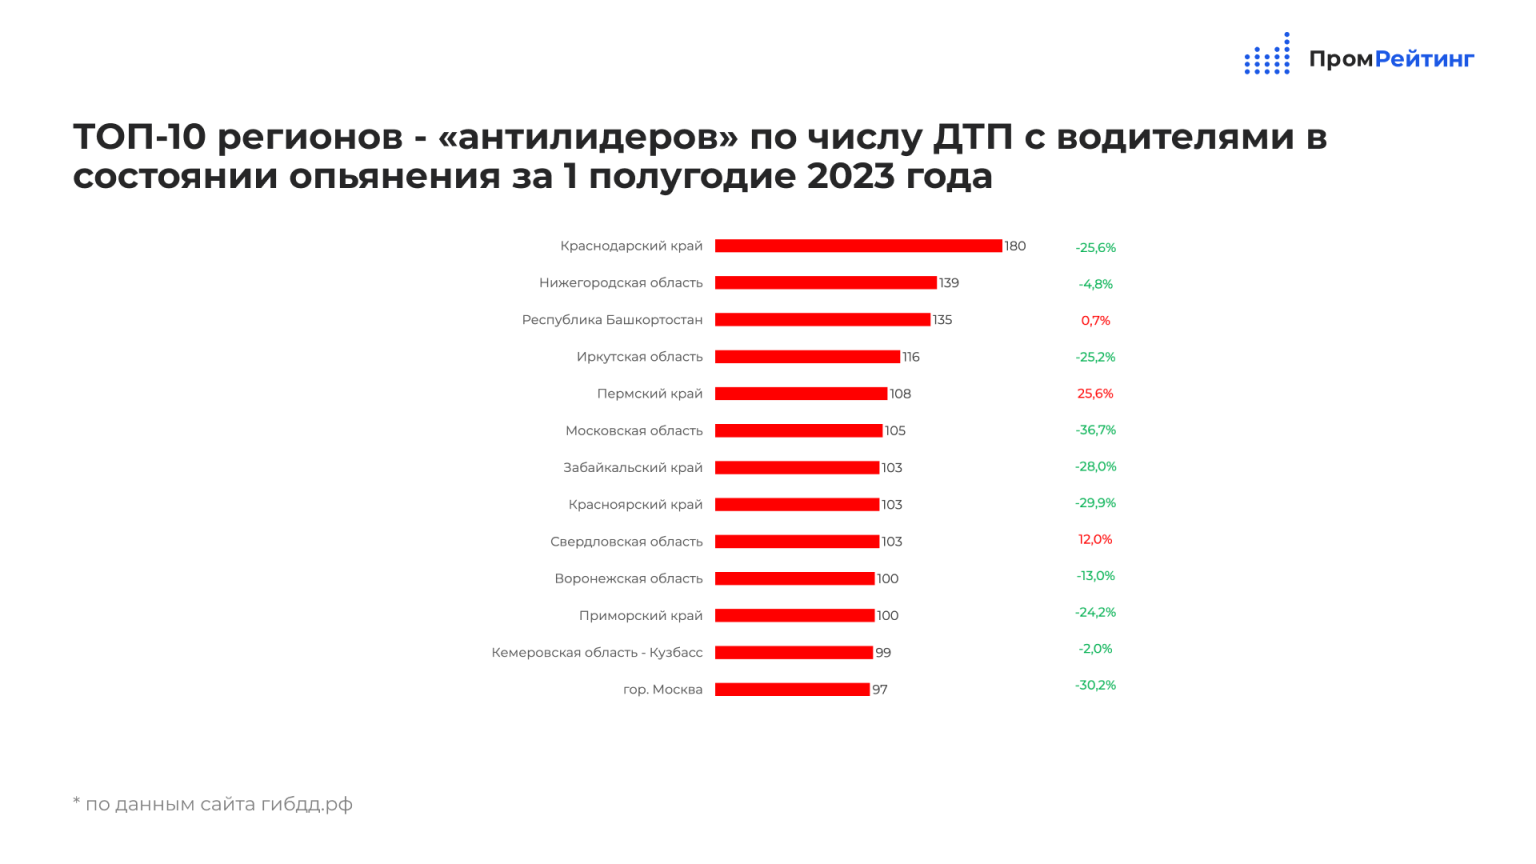 Как жить в 2023 году. Количество регионов в России на 2023. Рейтинг губернаторов 2023 в России. Статистика ДТП В России за 2023 год. Динамический рейтинг регионов.